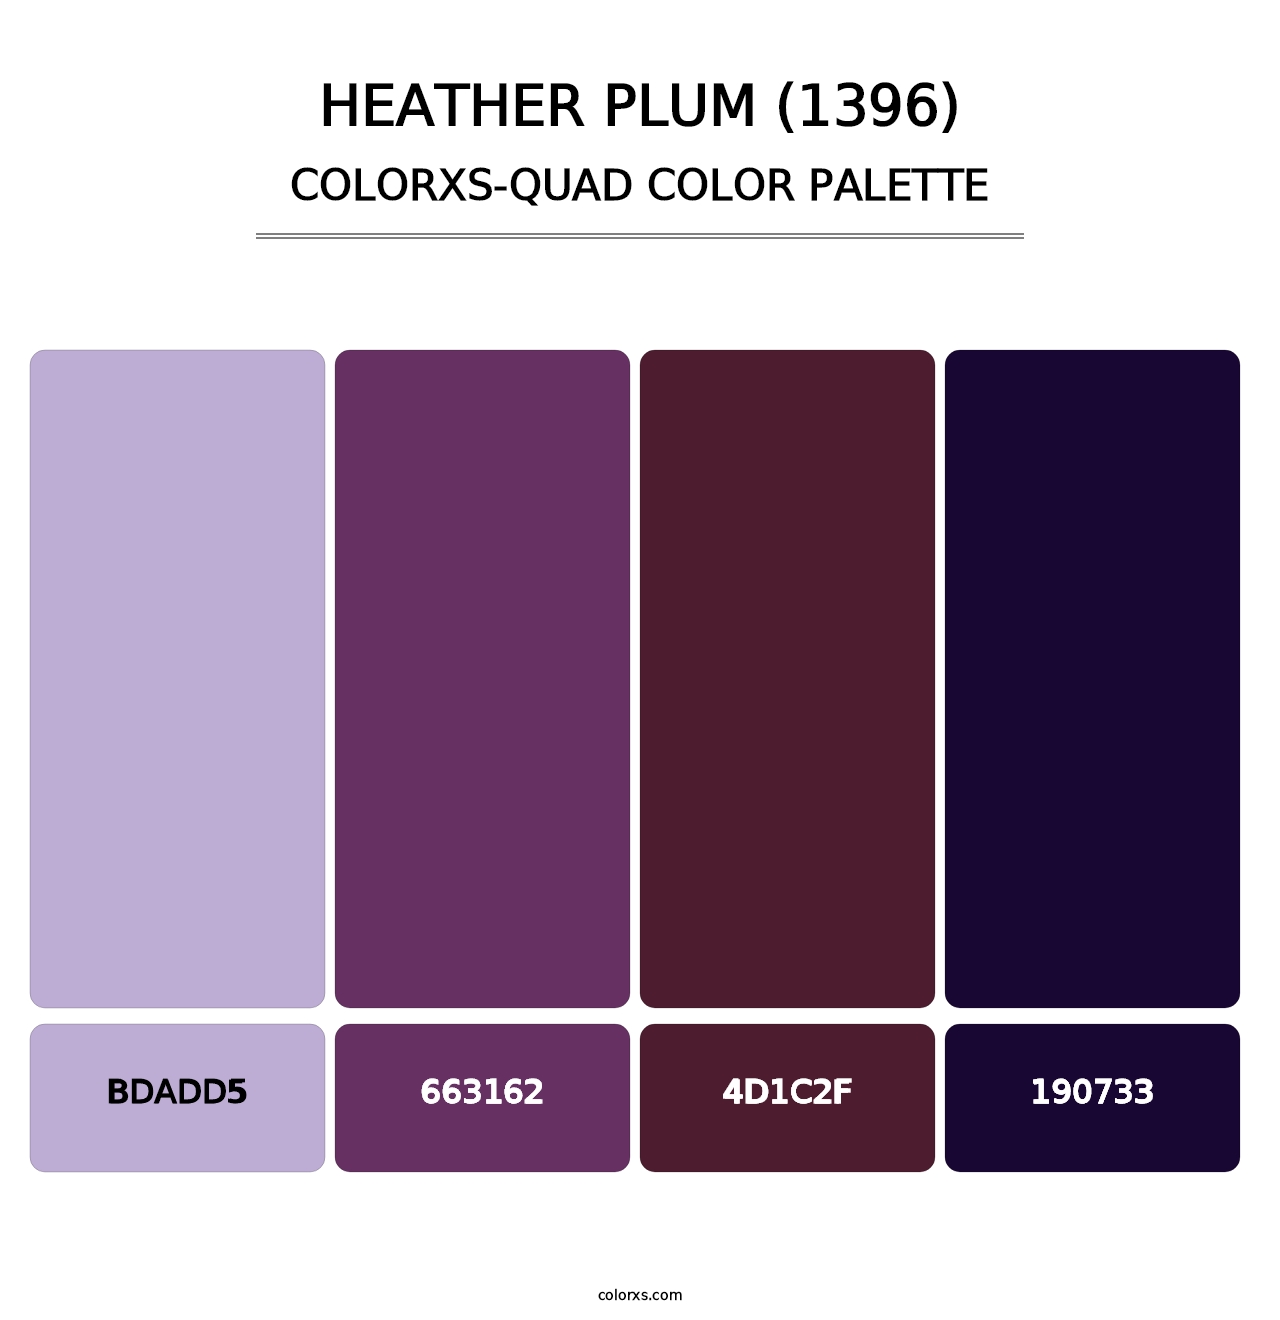 Heather Plum (1396) - Colorxs Quad Palette